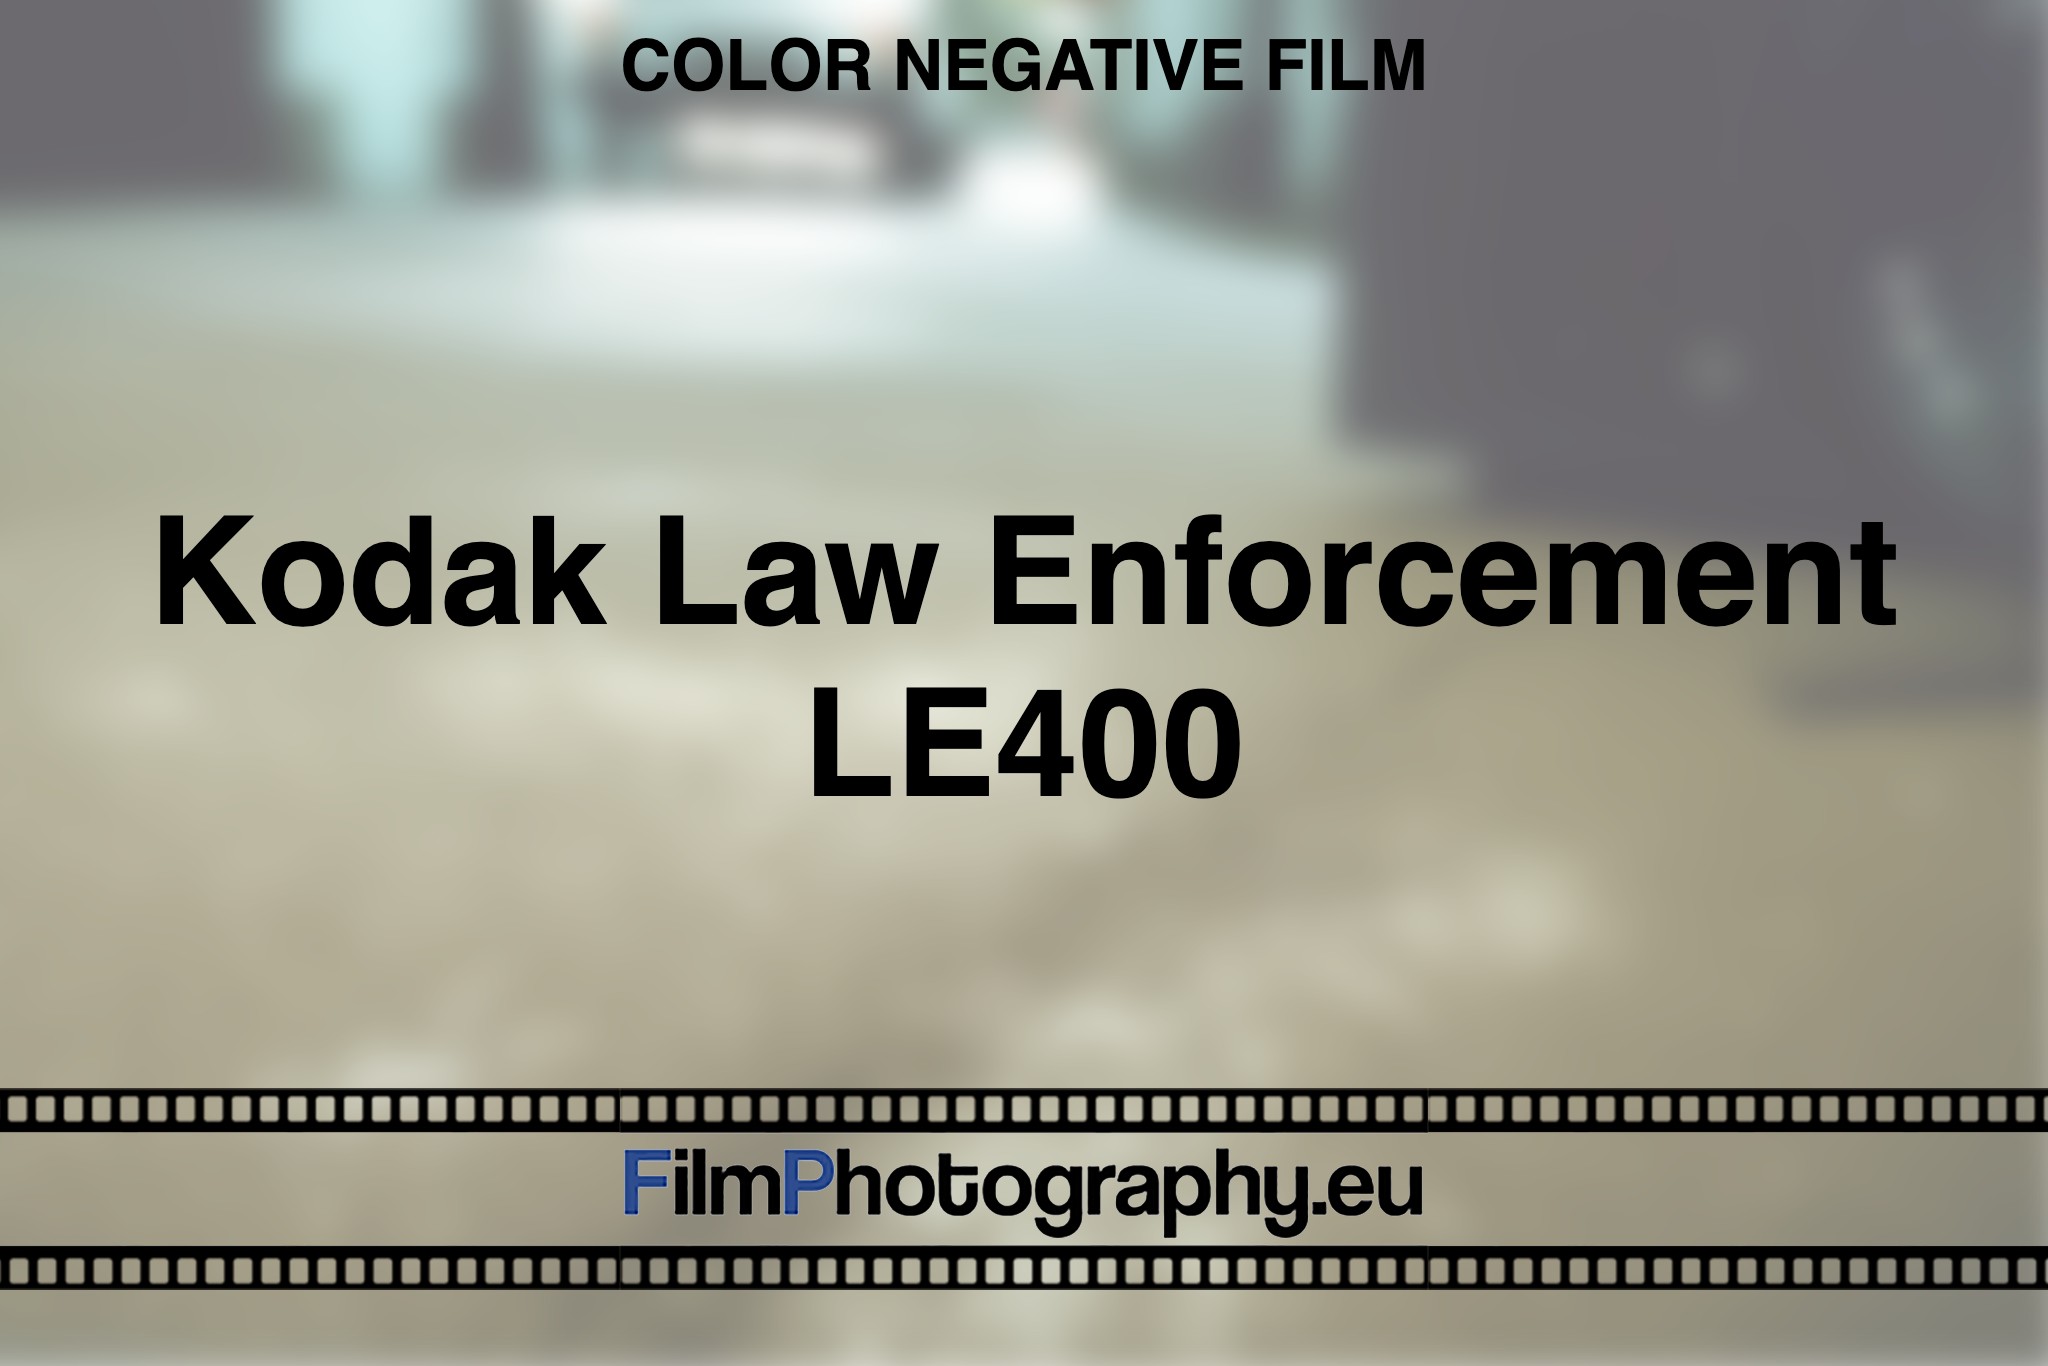 Kodak-Law-Enforcement-LE400-Color-negative-film-bnv